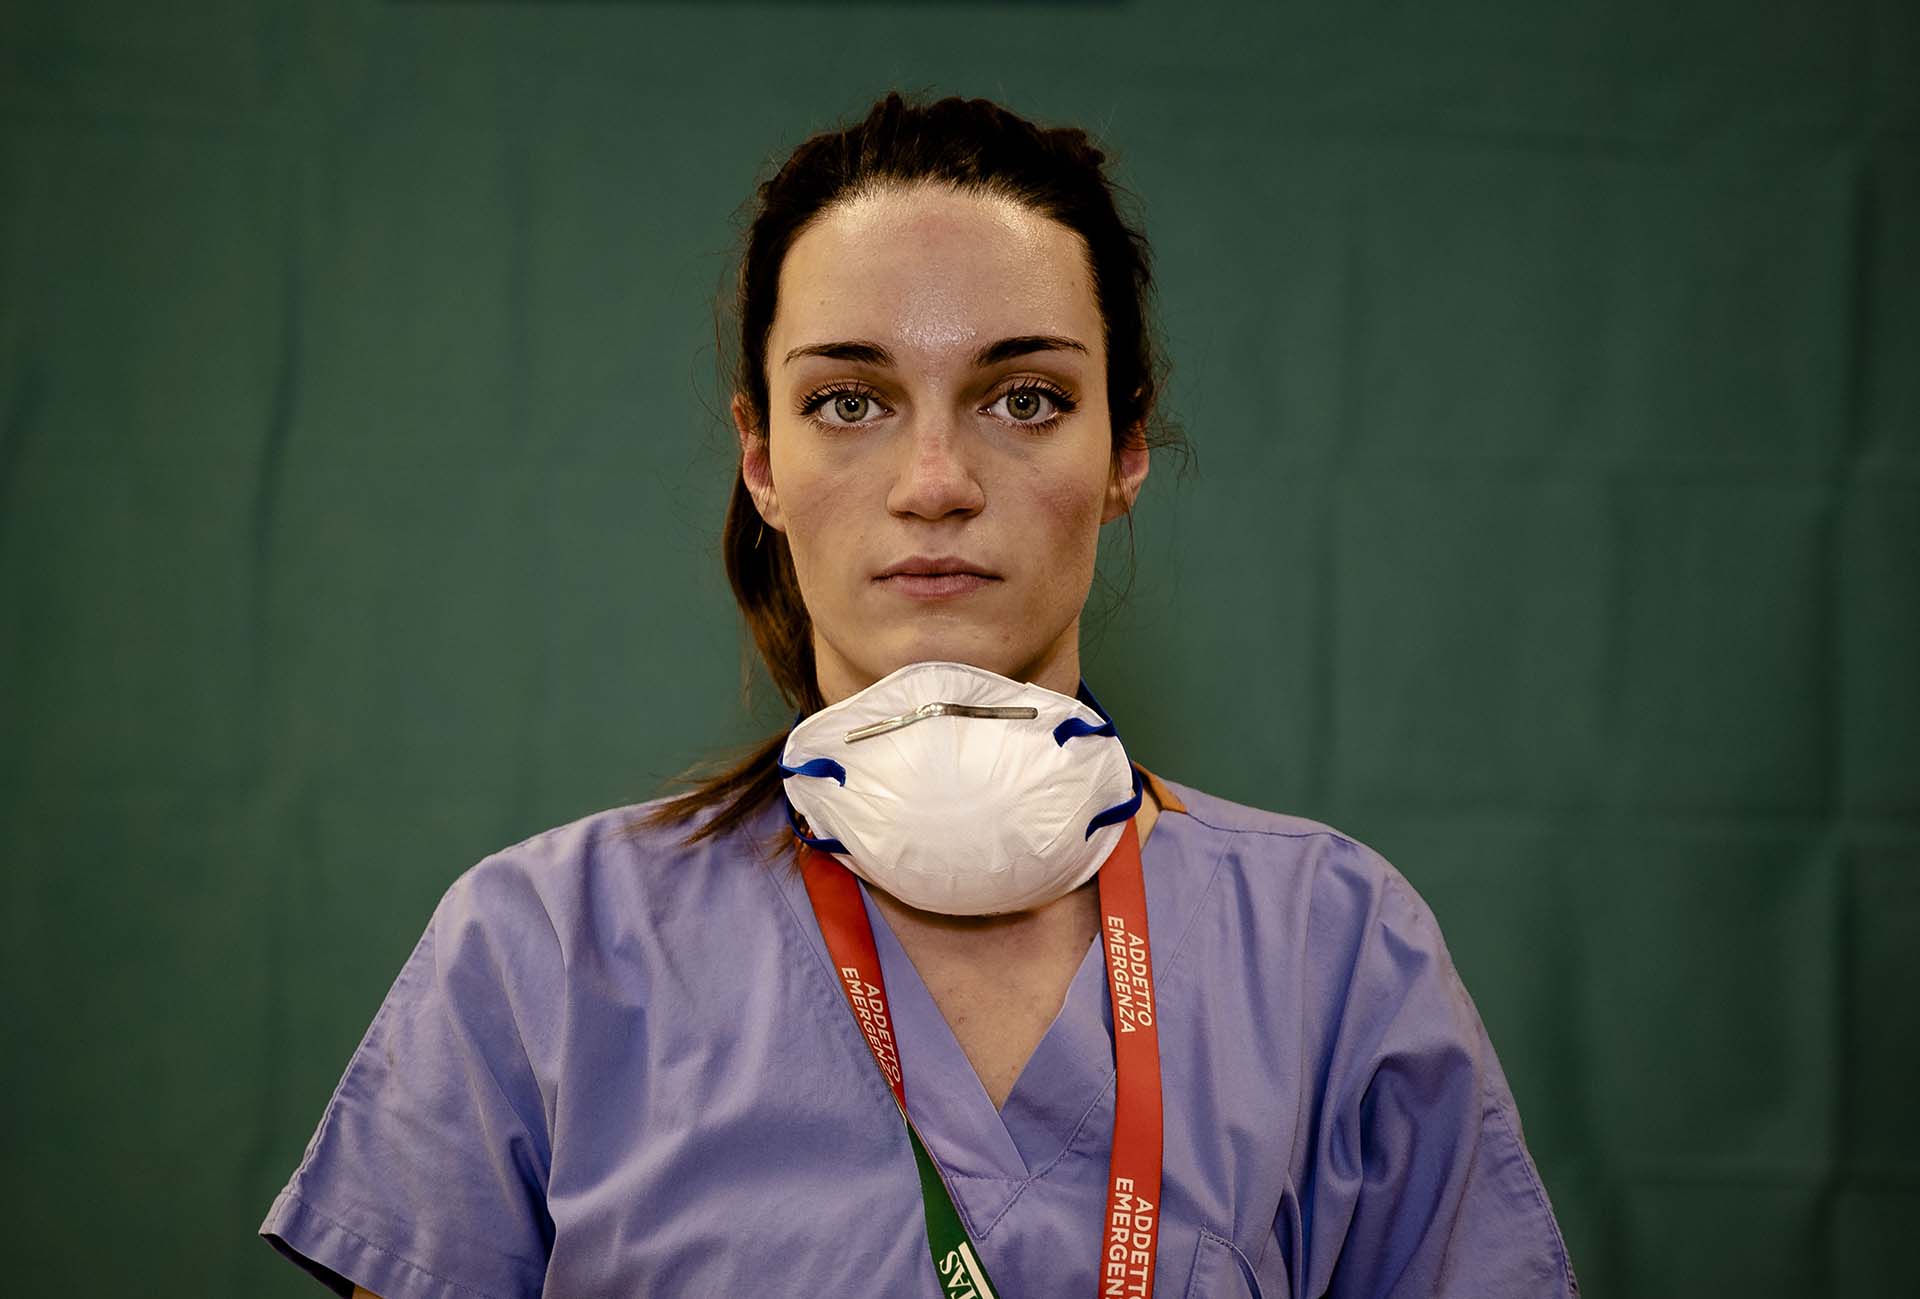 La enfermera Martina Papponetti, de 25 años, posa al final de su extenuante jornada laboral en el Humanitas Gavazzeni Hospital en Bergamo, Italia. (27 de marzo)